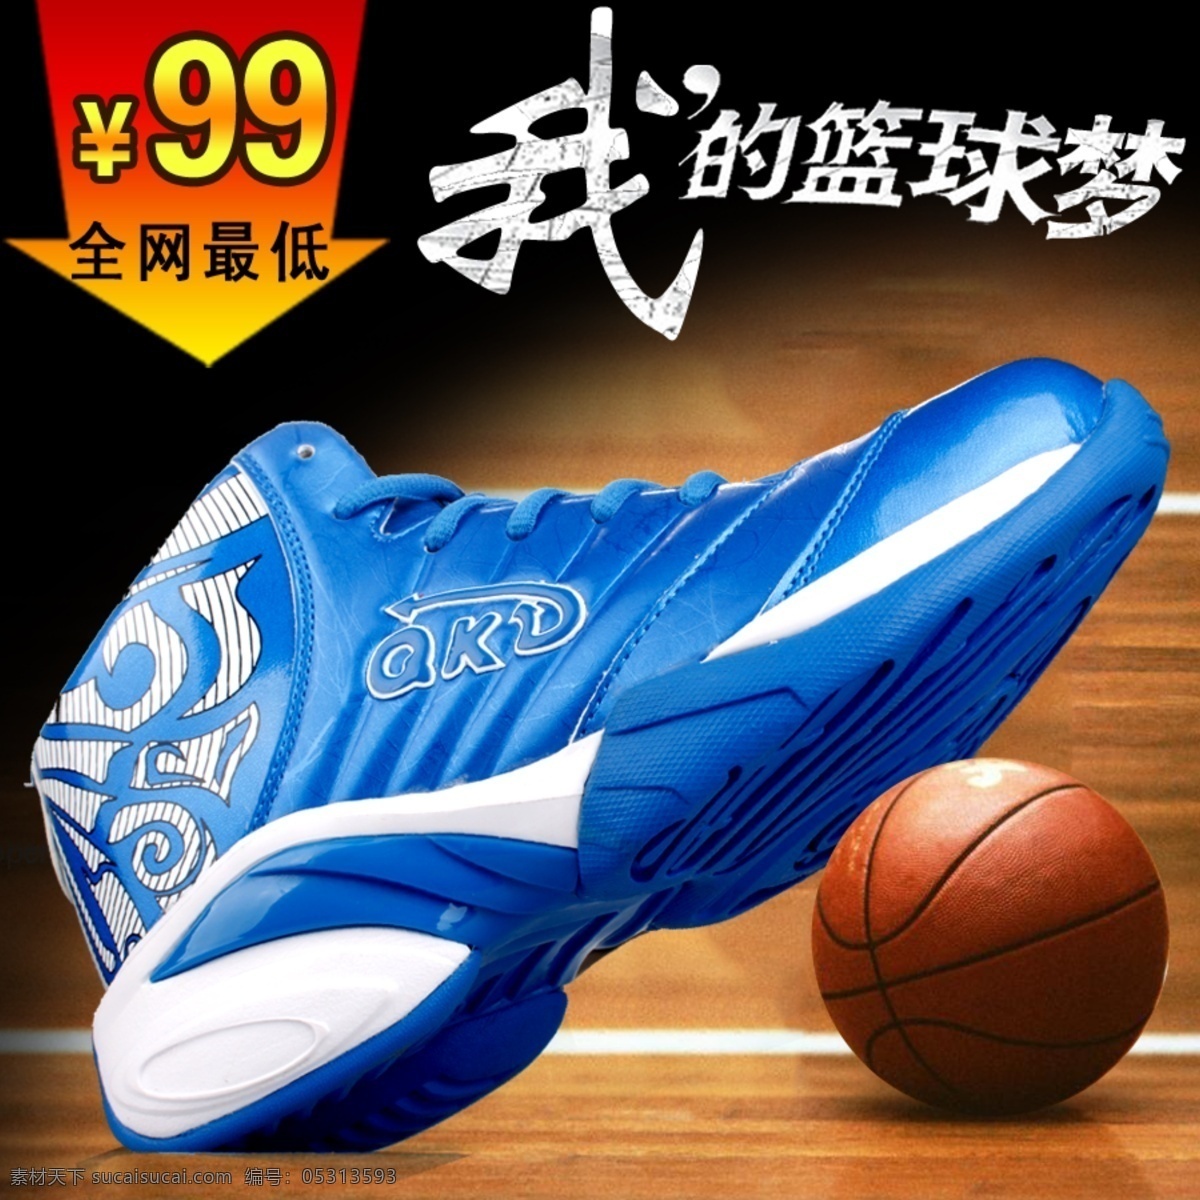 儿童 篮球鞋 网页模板 源文件 中文模板 篮球 鞋 广告 图 模板下载 篮球鞋广告图 我的篮球梦 网页素材